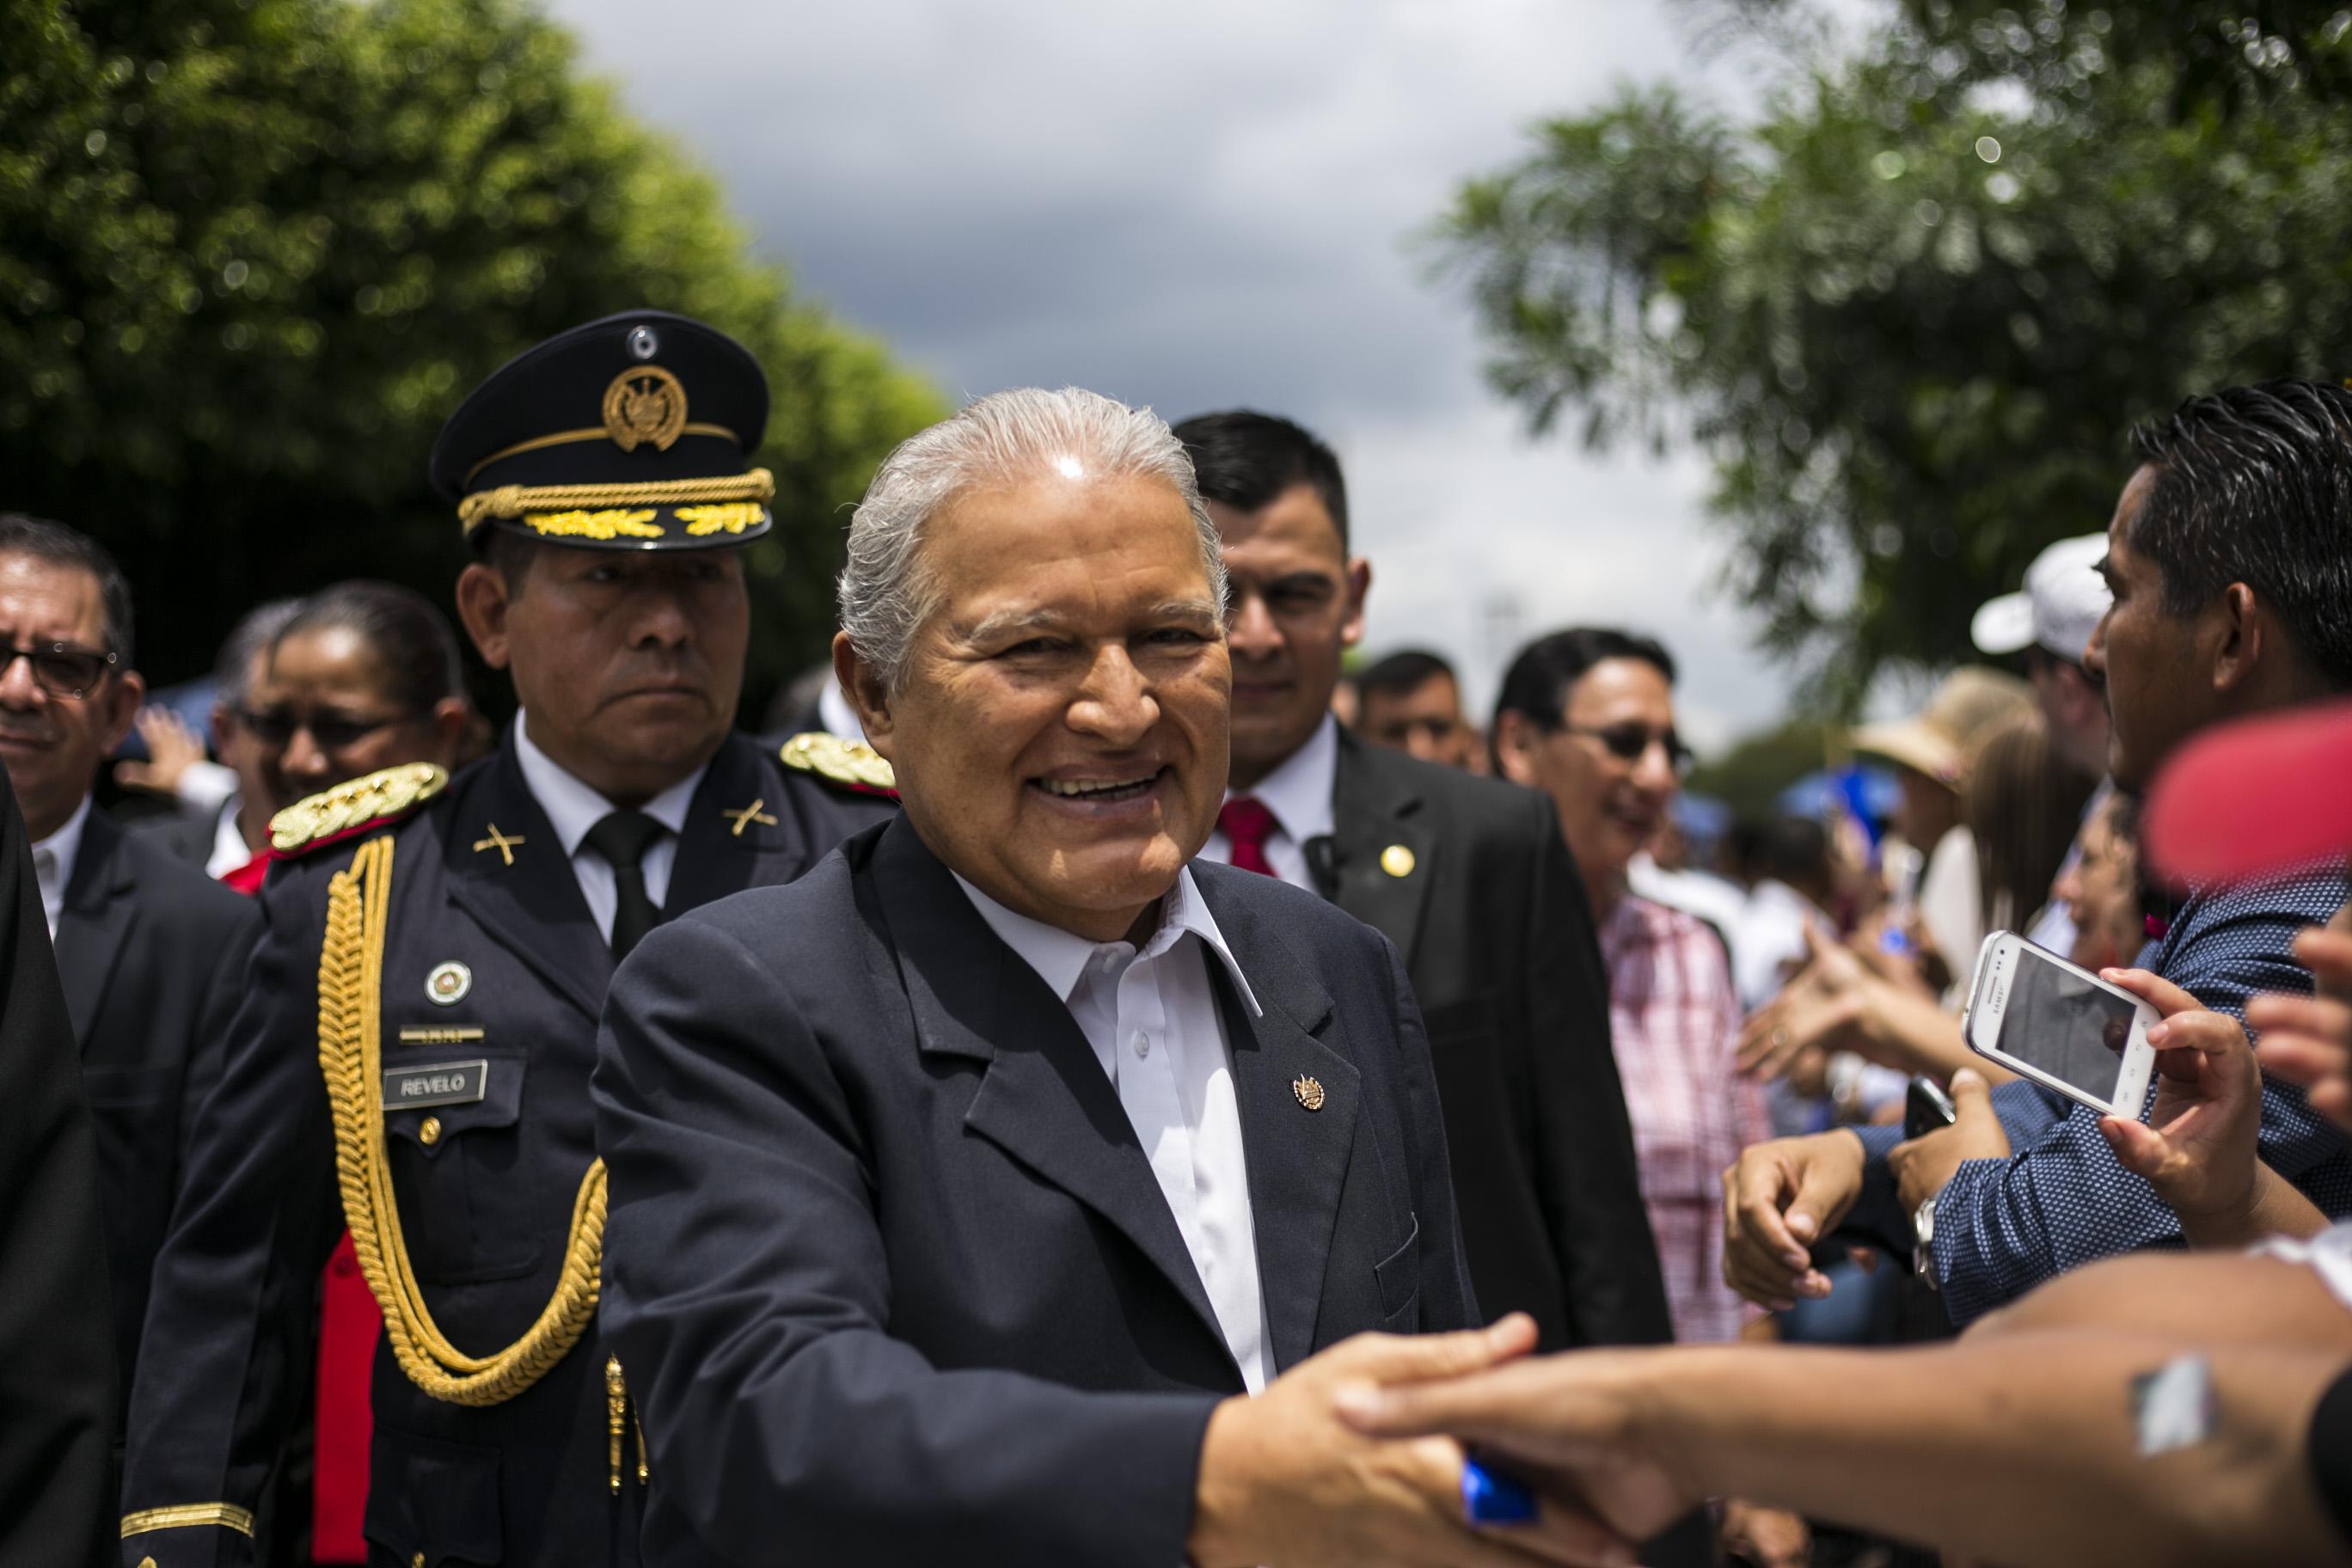 El presidente Salvador Sánchez Cerén saluda a los asistentes durante la celebració de su tercer año de su gobierno. Foto: Fred Ramos